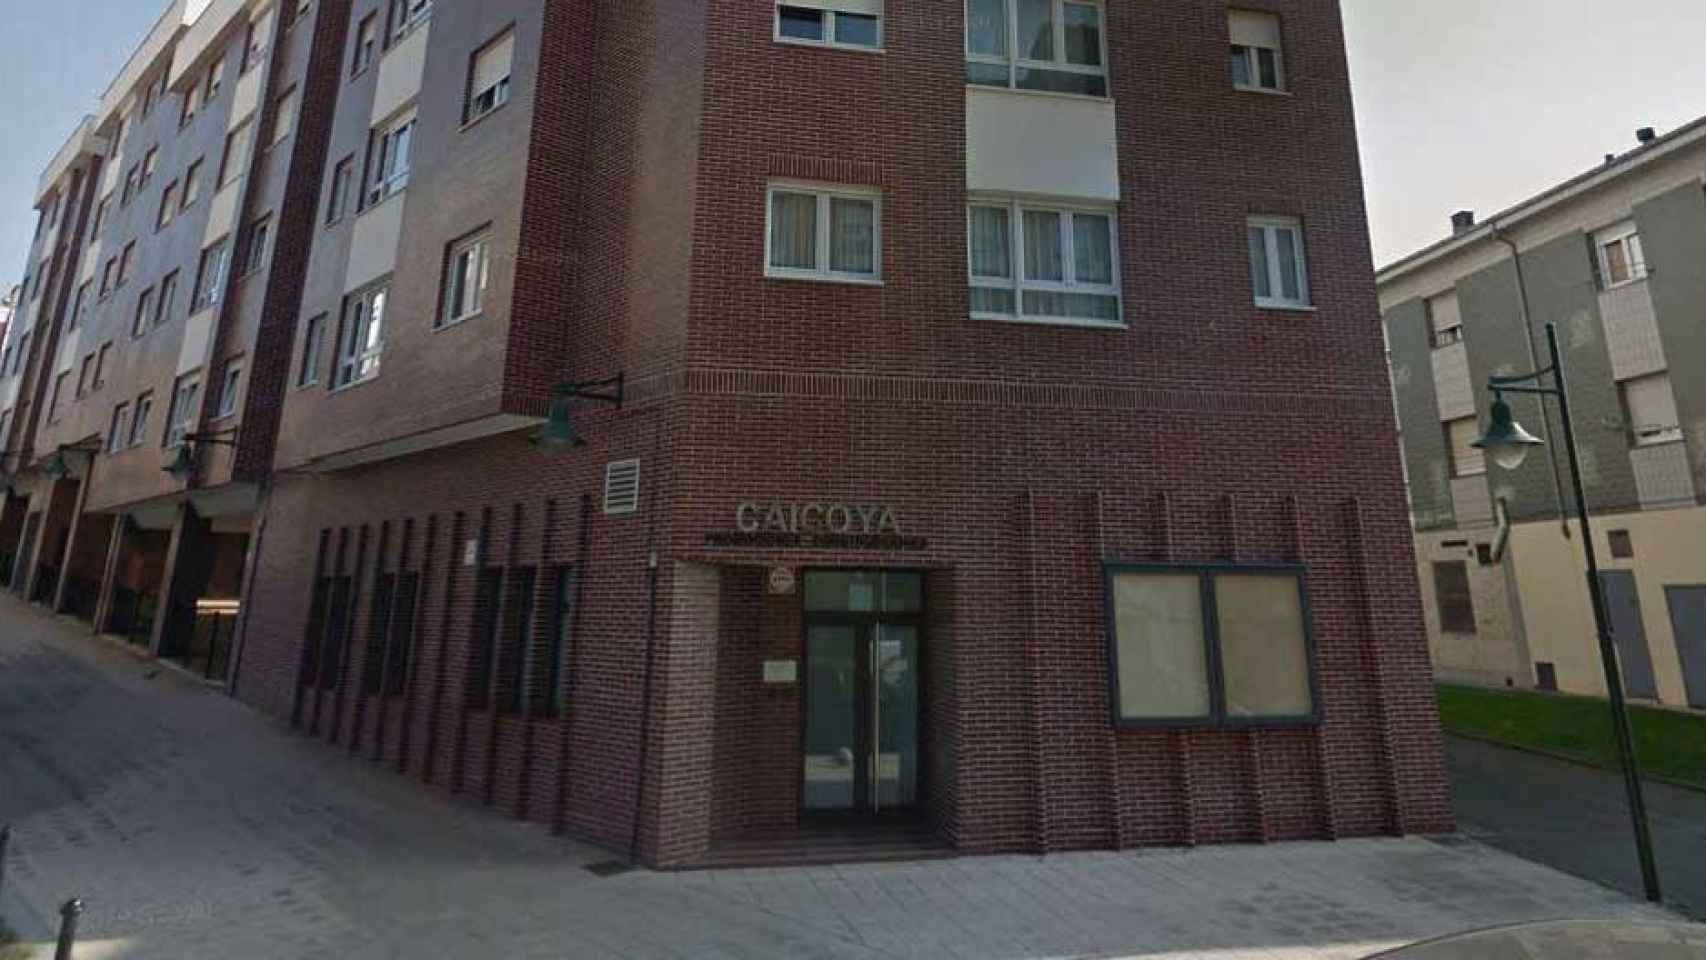 Sede de Construcciones Caicoya, propietaria de Terrenos de Gijón / CG